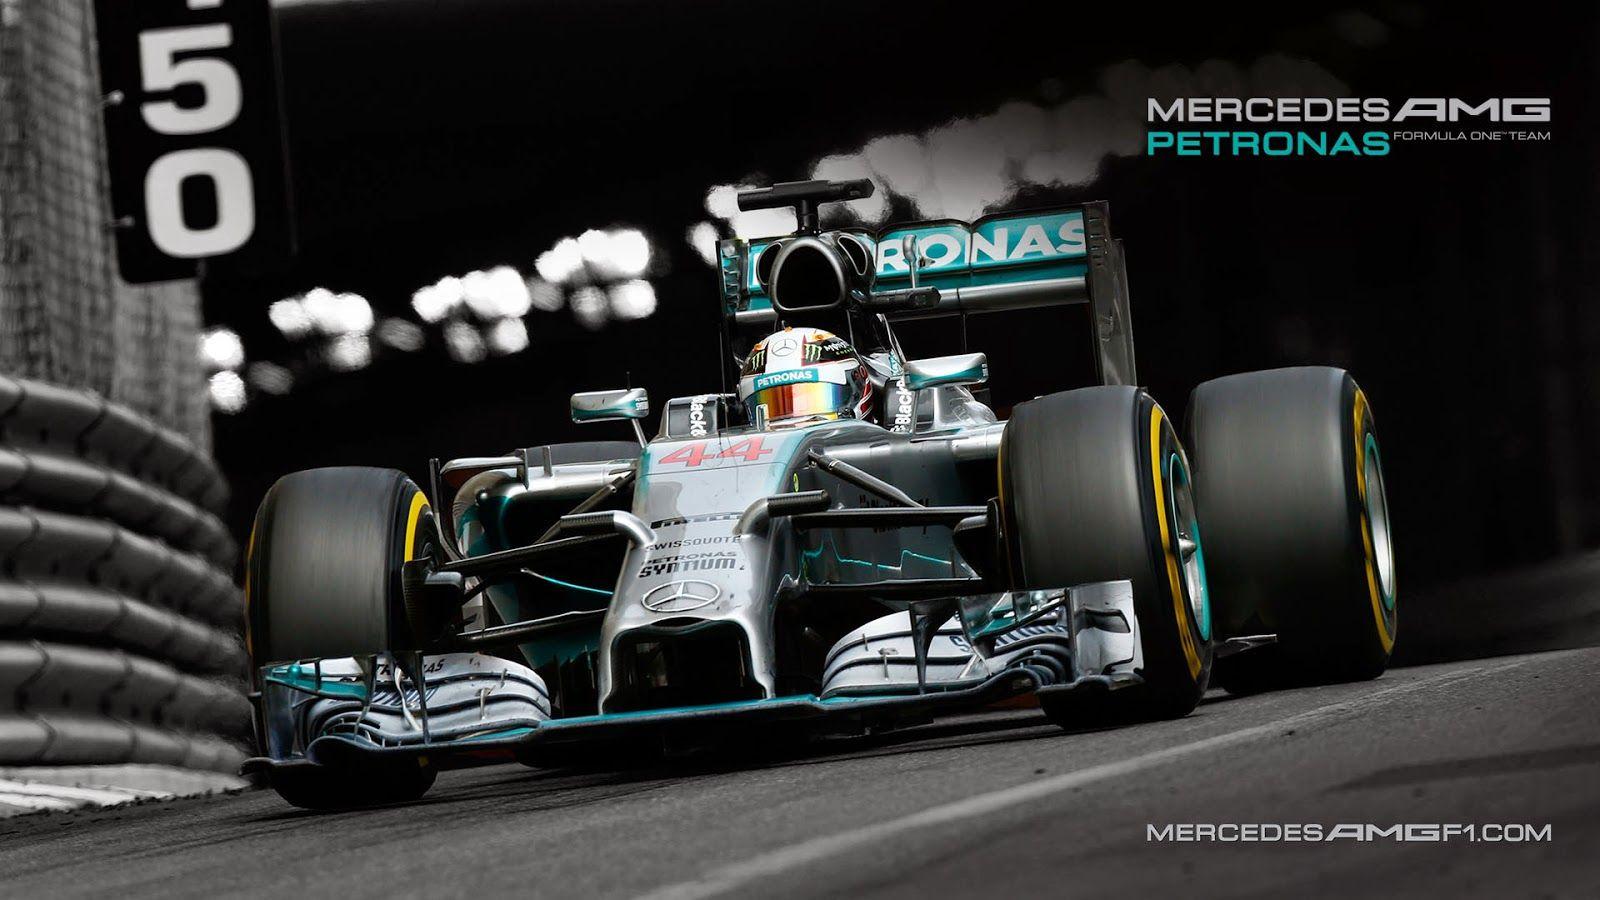 F1 Mercedes Wallpaper HD Resolution .com